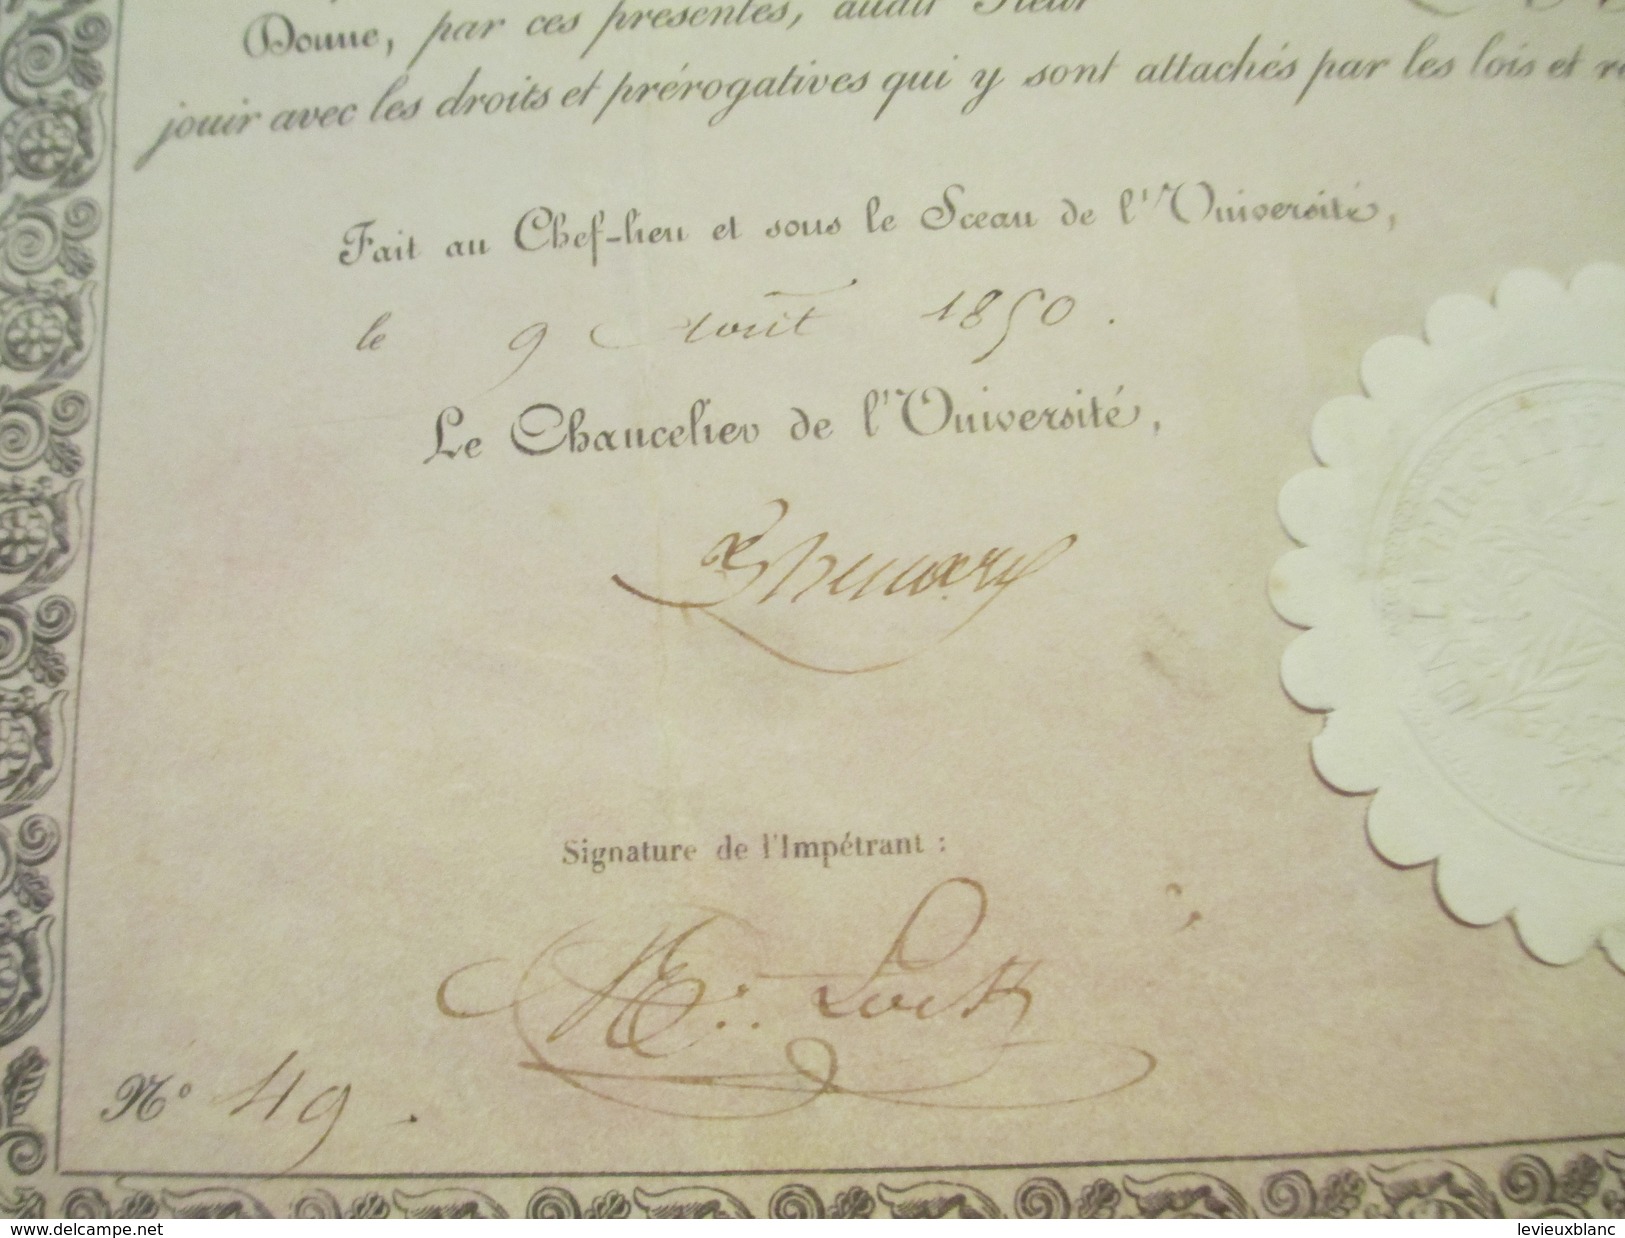 Diplôme De Pharmacien/R F/Université De France/Ministre De L'Instruction Publique Et Des Cultes/ LOCK/1850        DIP160 - Diploma & School Reports